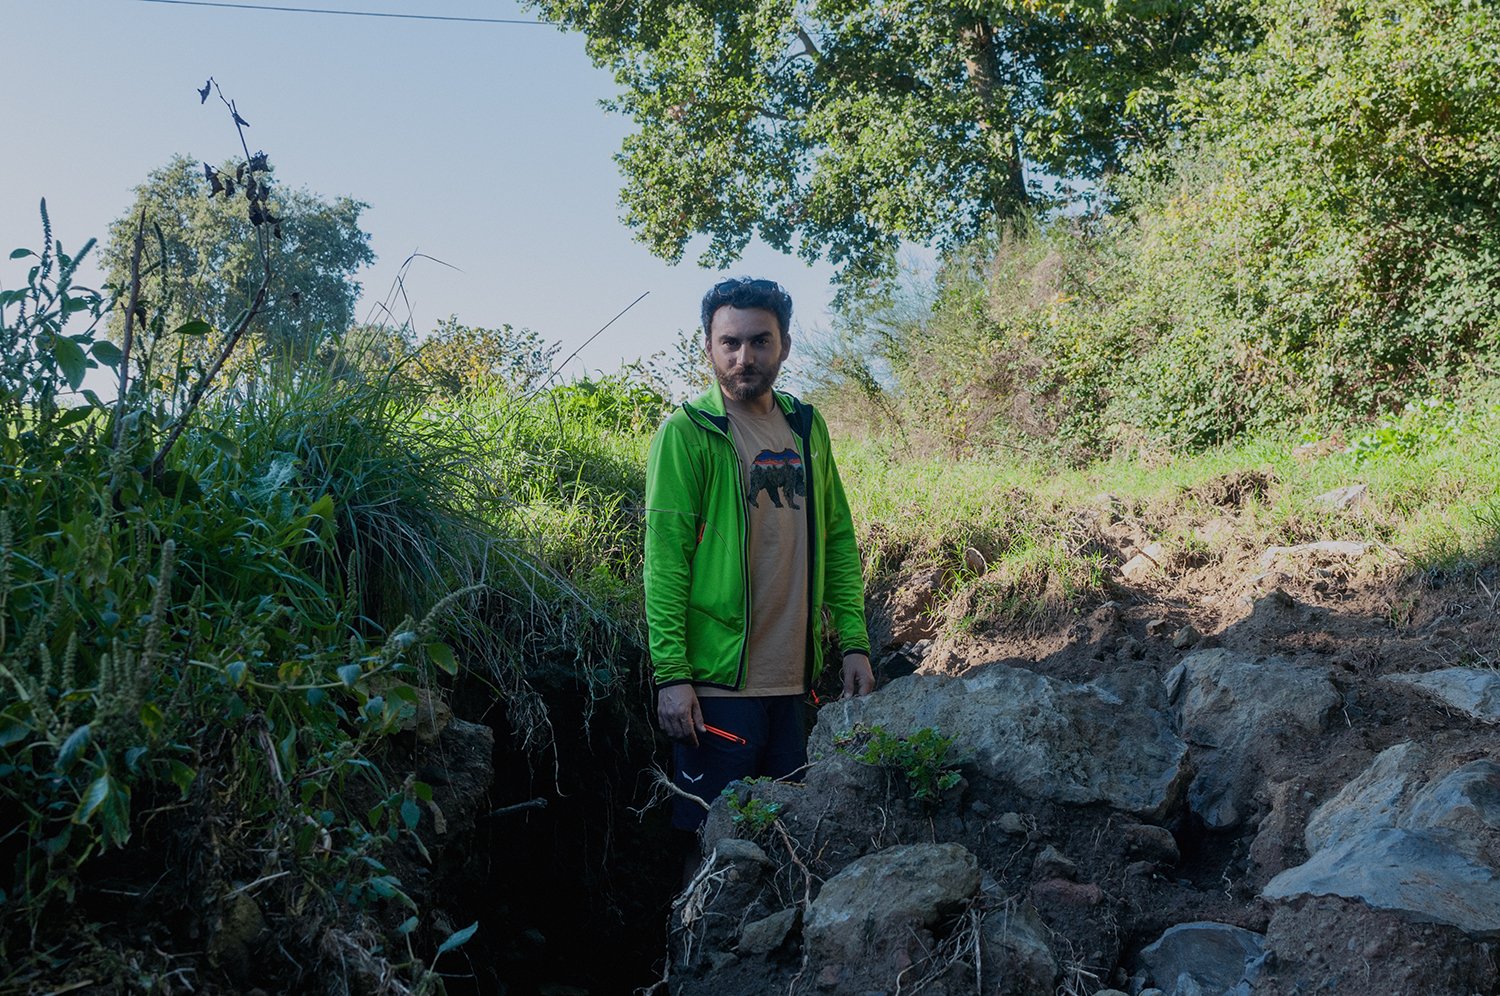  Gabriele Antoniella, agronomo e presidente del Biodistretto del Lago di Bolsena, mostra come nella zona la coltivazione di noccioleti abbia causato l’erosione del terreno. Sugano (Terni), ottobre 2022.  